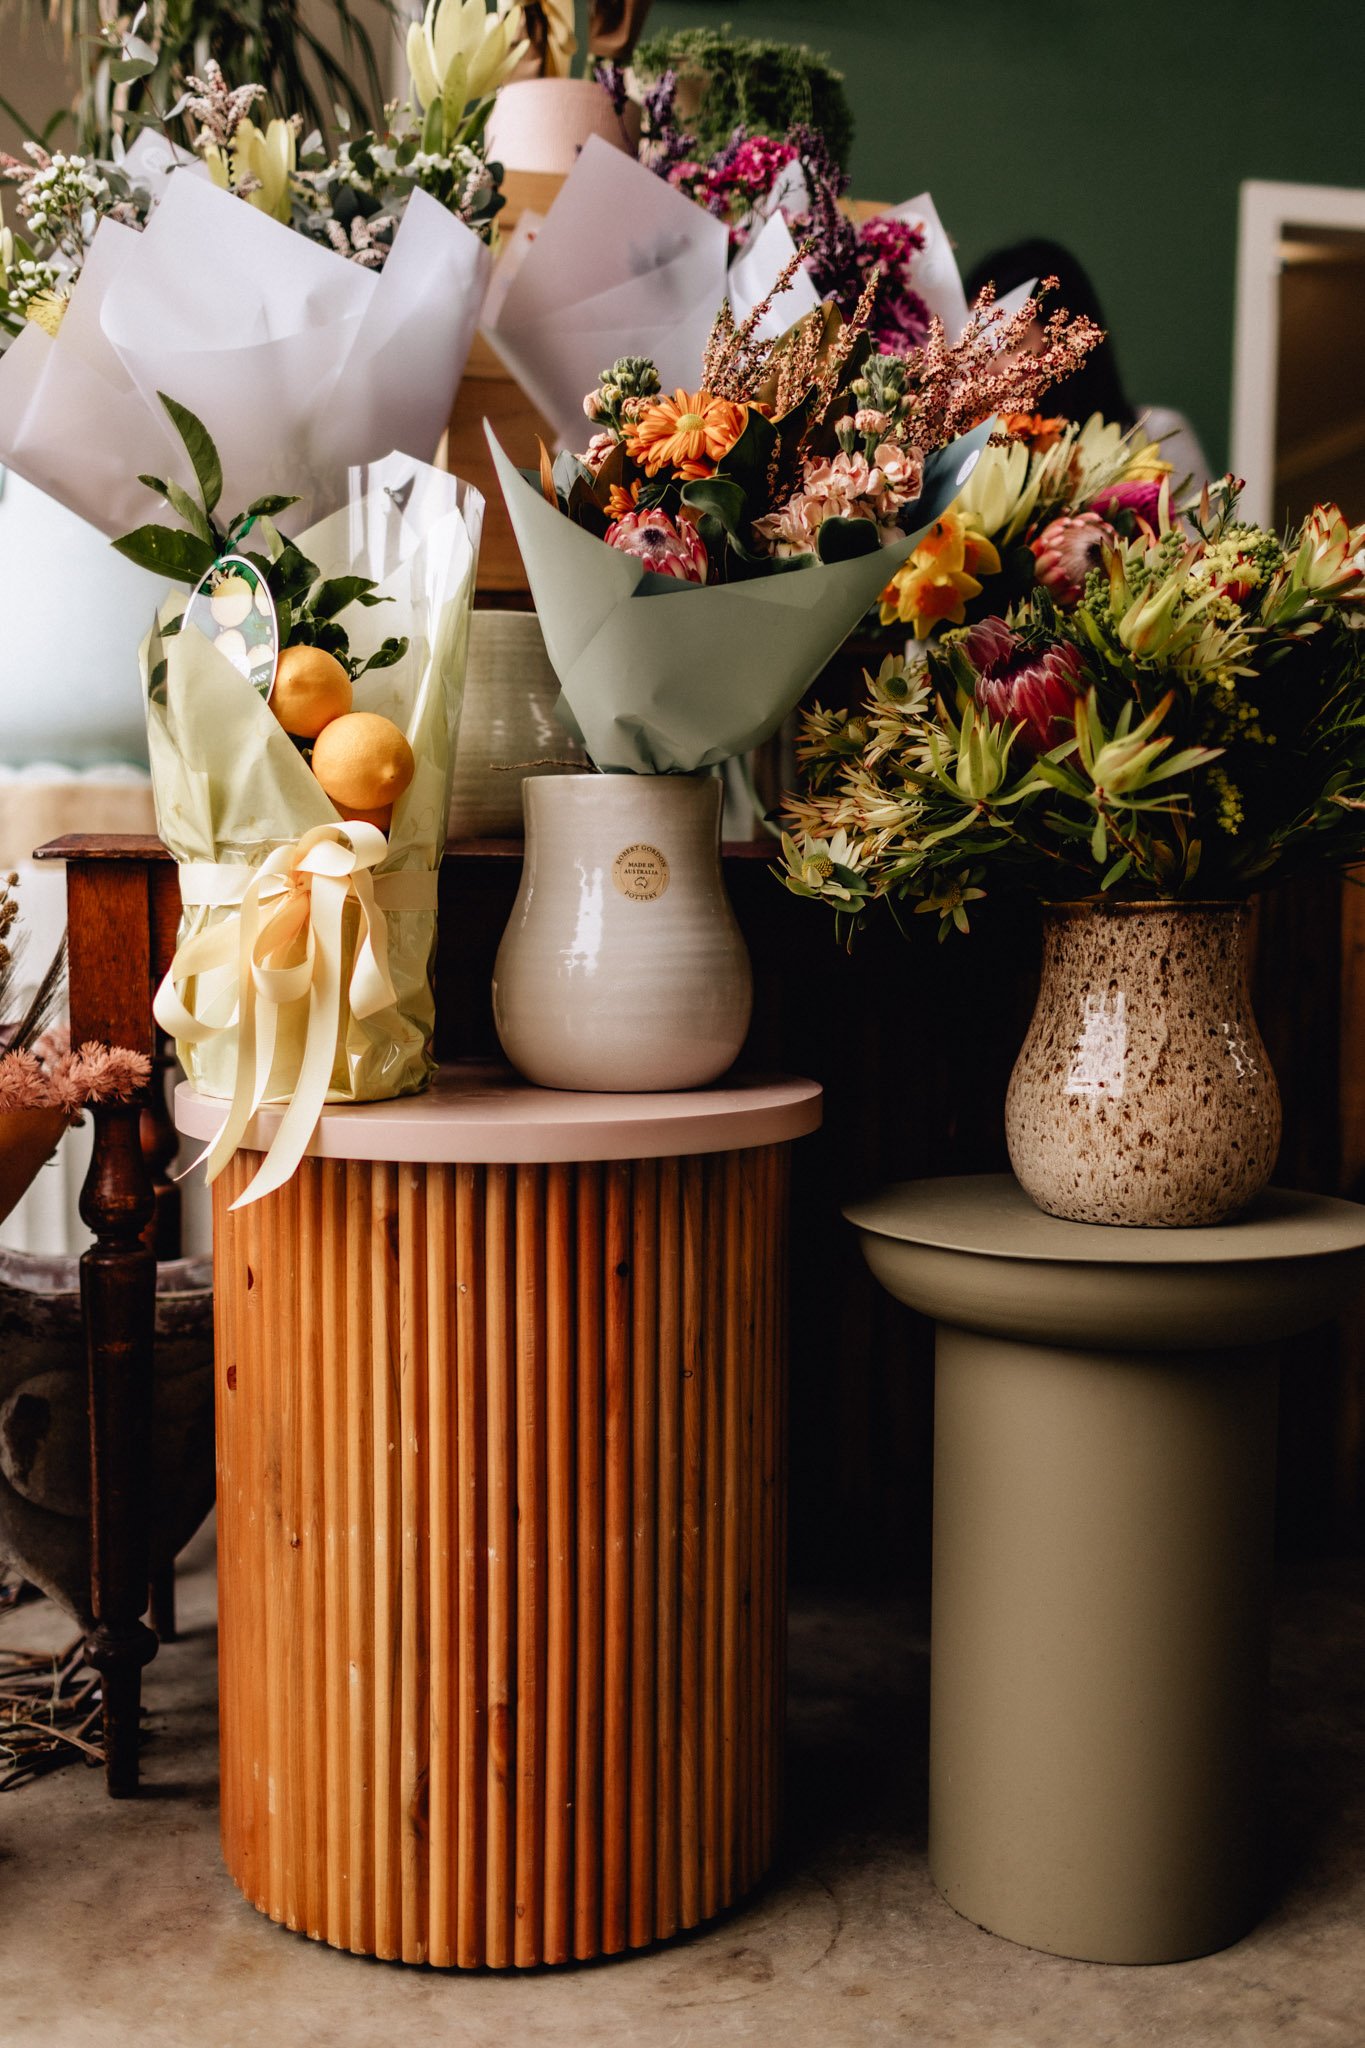 flower and vase display in floristy store.jpg